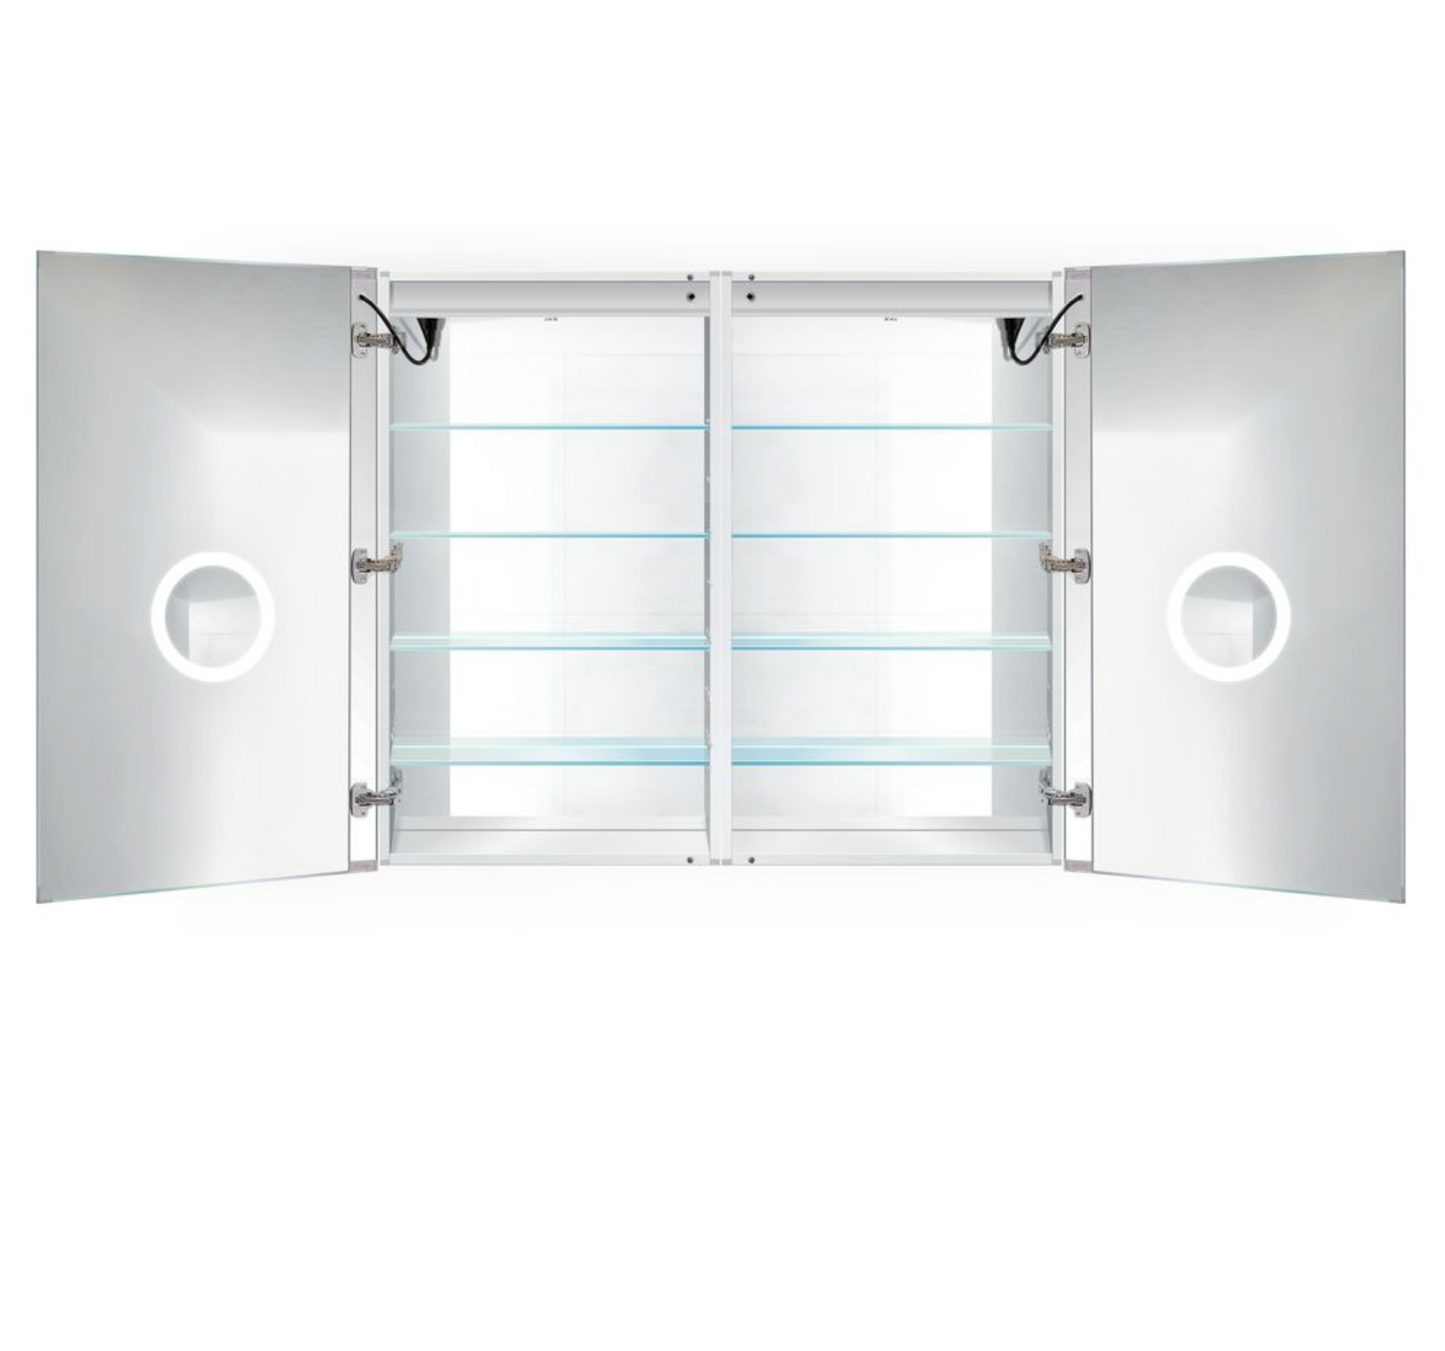 SVANGE 48 X 42 LED Lighted Mirror Medicine Cabinet, Defogger included, 2 & 3 Door Options